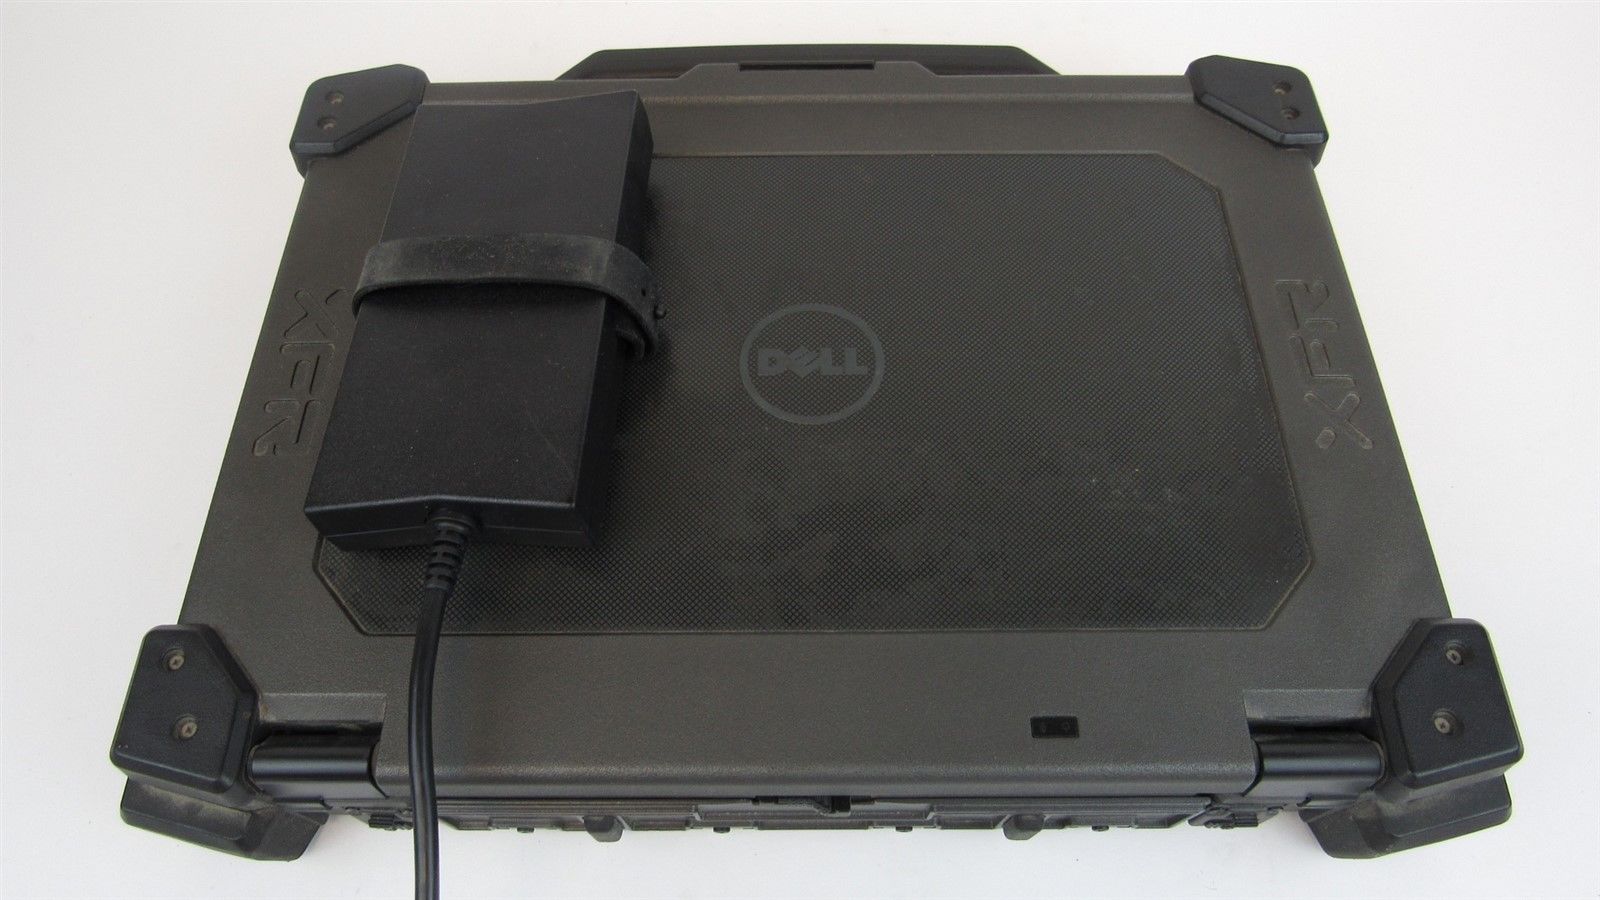 Dell Latitude E6420 XFR I7-2640M 8Gb 128Gb SSD Touchscreen Windows 10 Pro Laptop